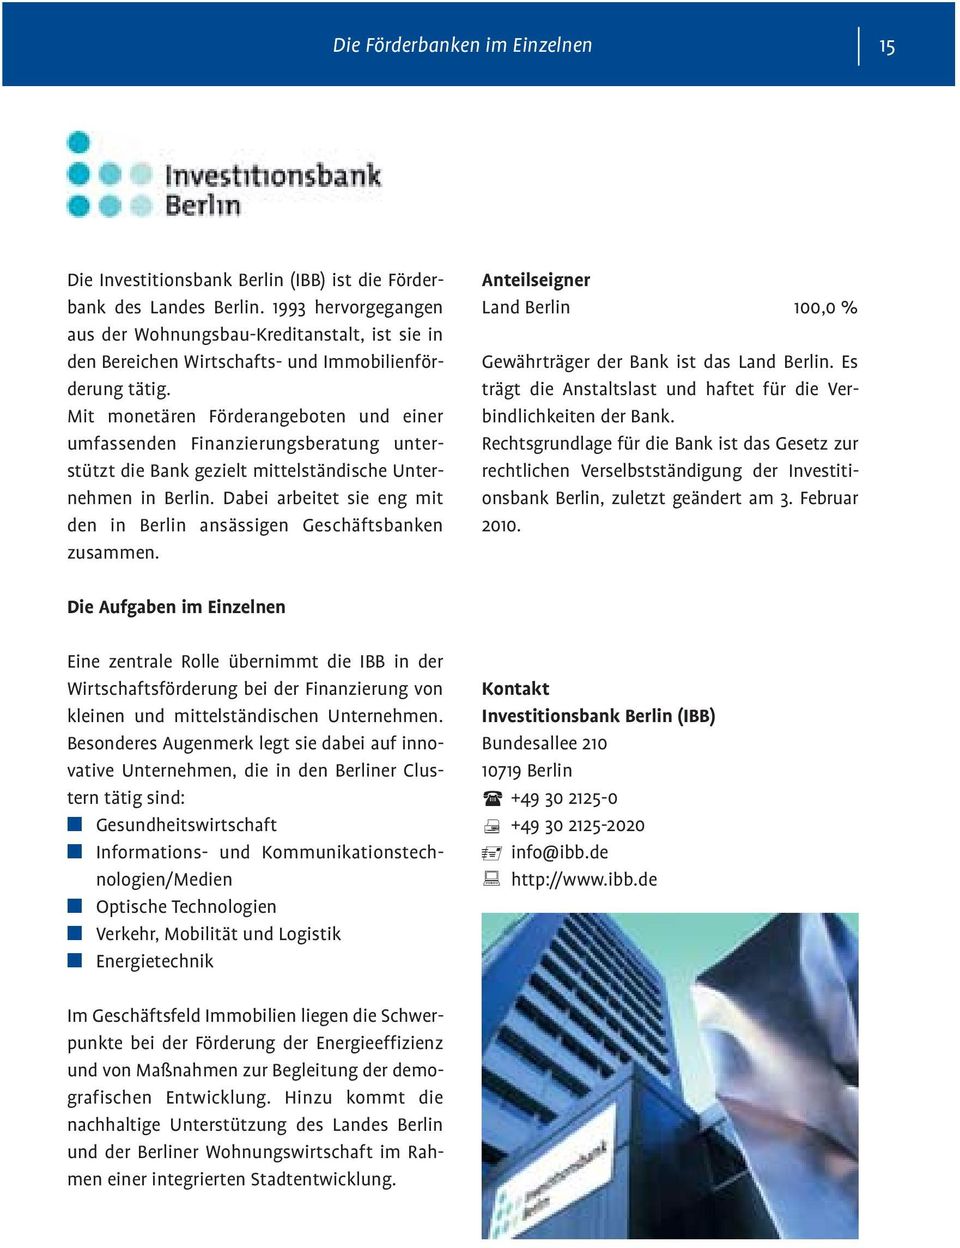 Mit monetären Förderangeboten und einer umfassenden Finanzierungsberatung unterstützt die Bank gezielt mittelständische Unternehmen in Berlin.